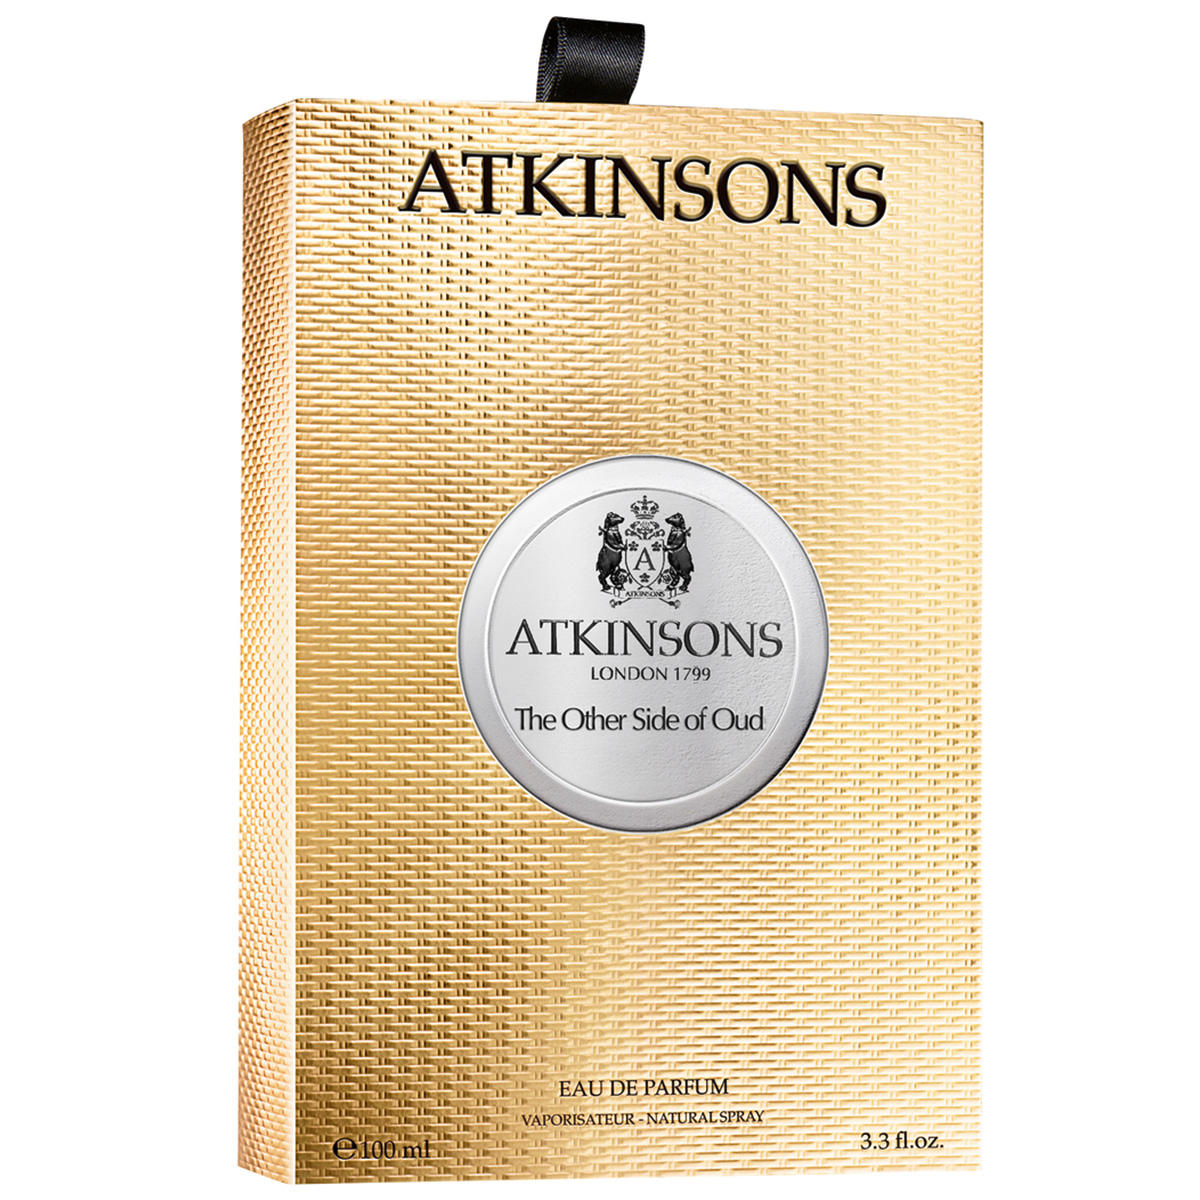 ATKINSONS The Other Side of Oud Eau de Parfum 100 ml - 3